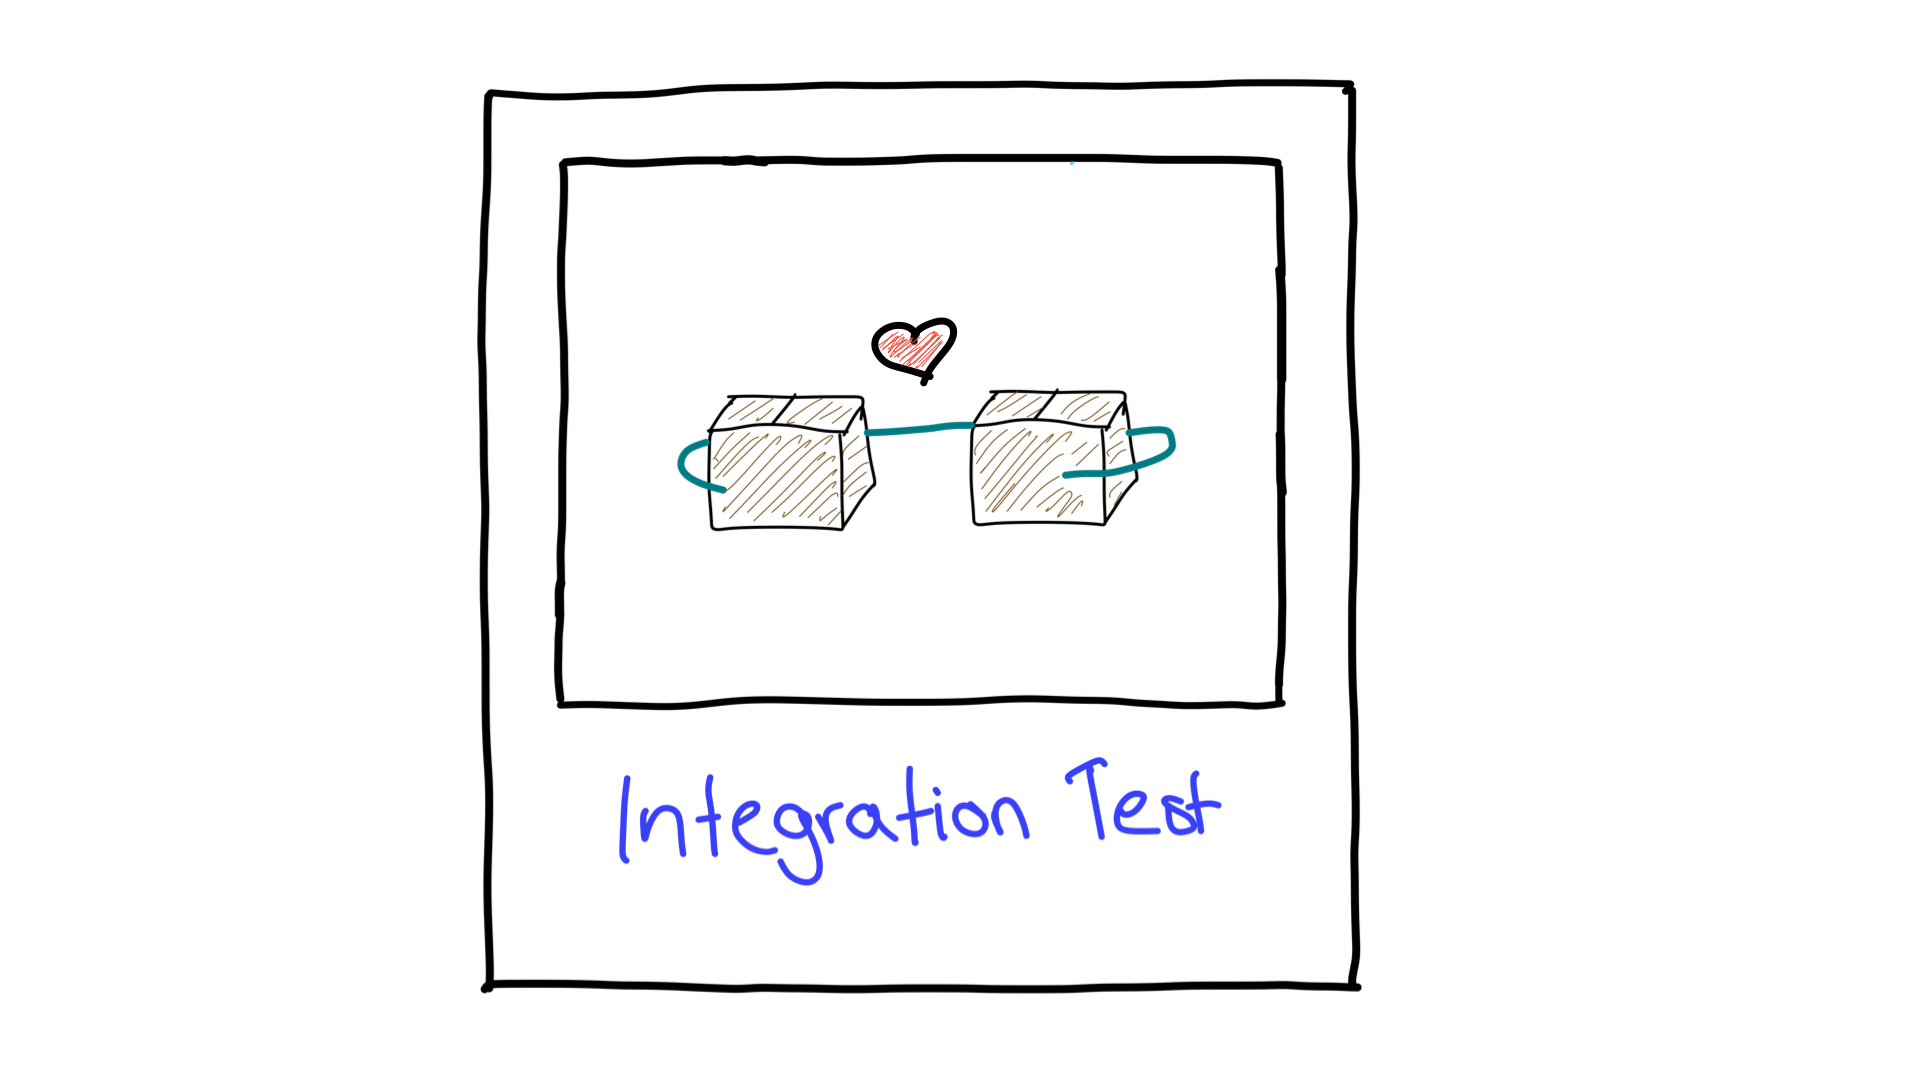 Hình ảnh mô tả đơn giản về quá trình kiểm thử tích hợp cho thấy cách hai đơn vị hoạt động cùng nhau.